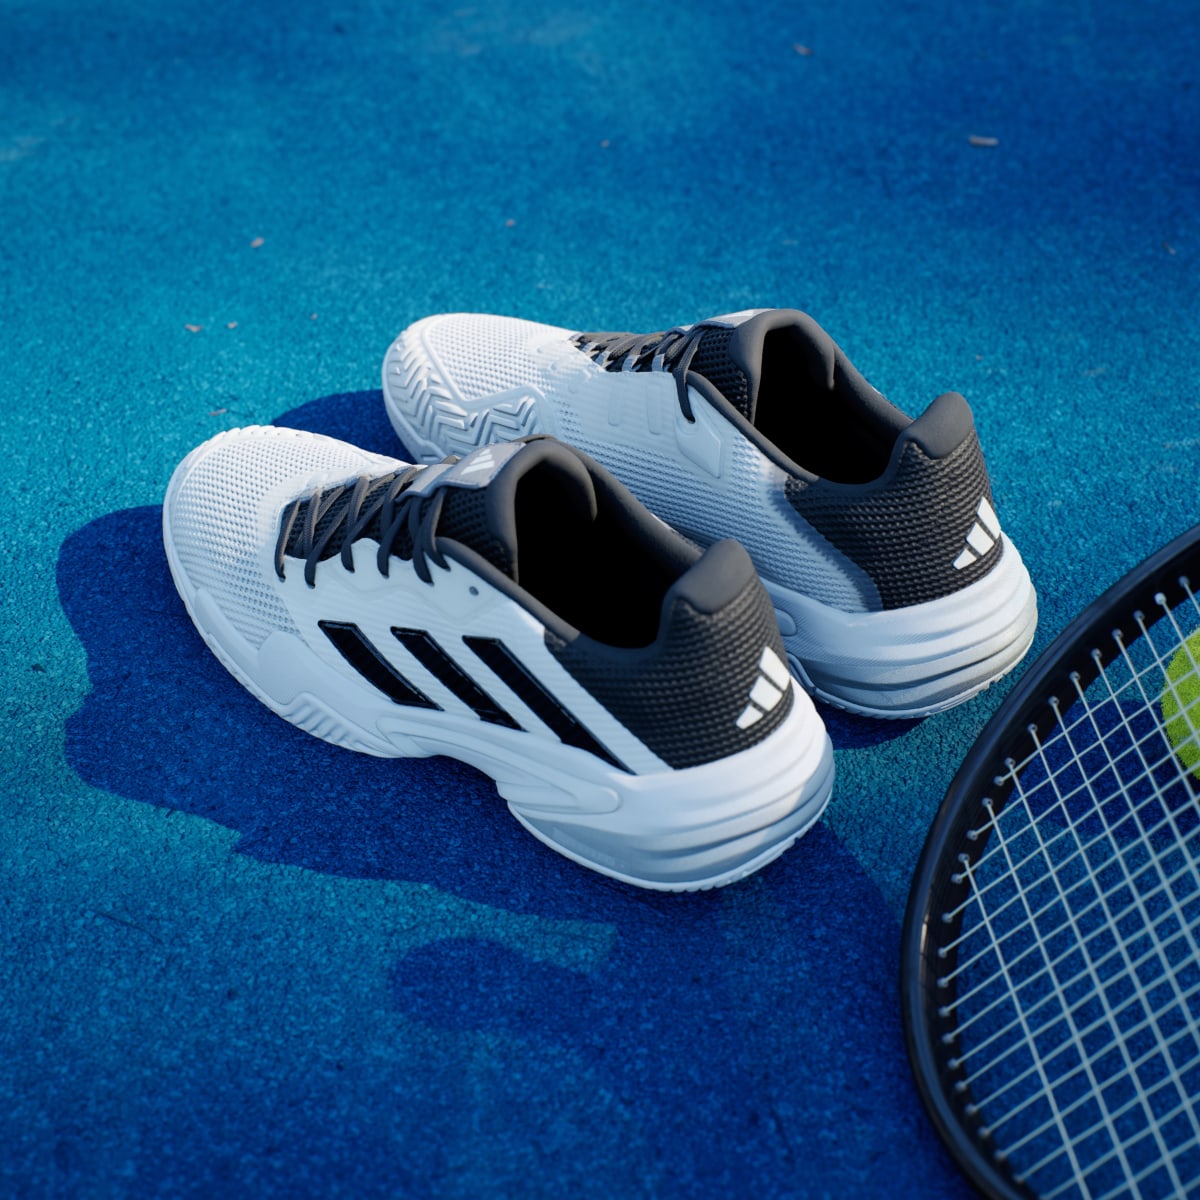 Adidas Zapatilla Barricade 13 Tennis. 6